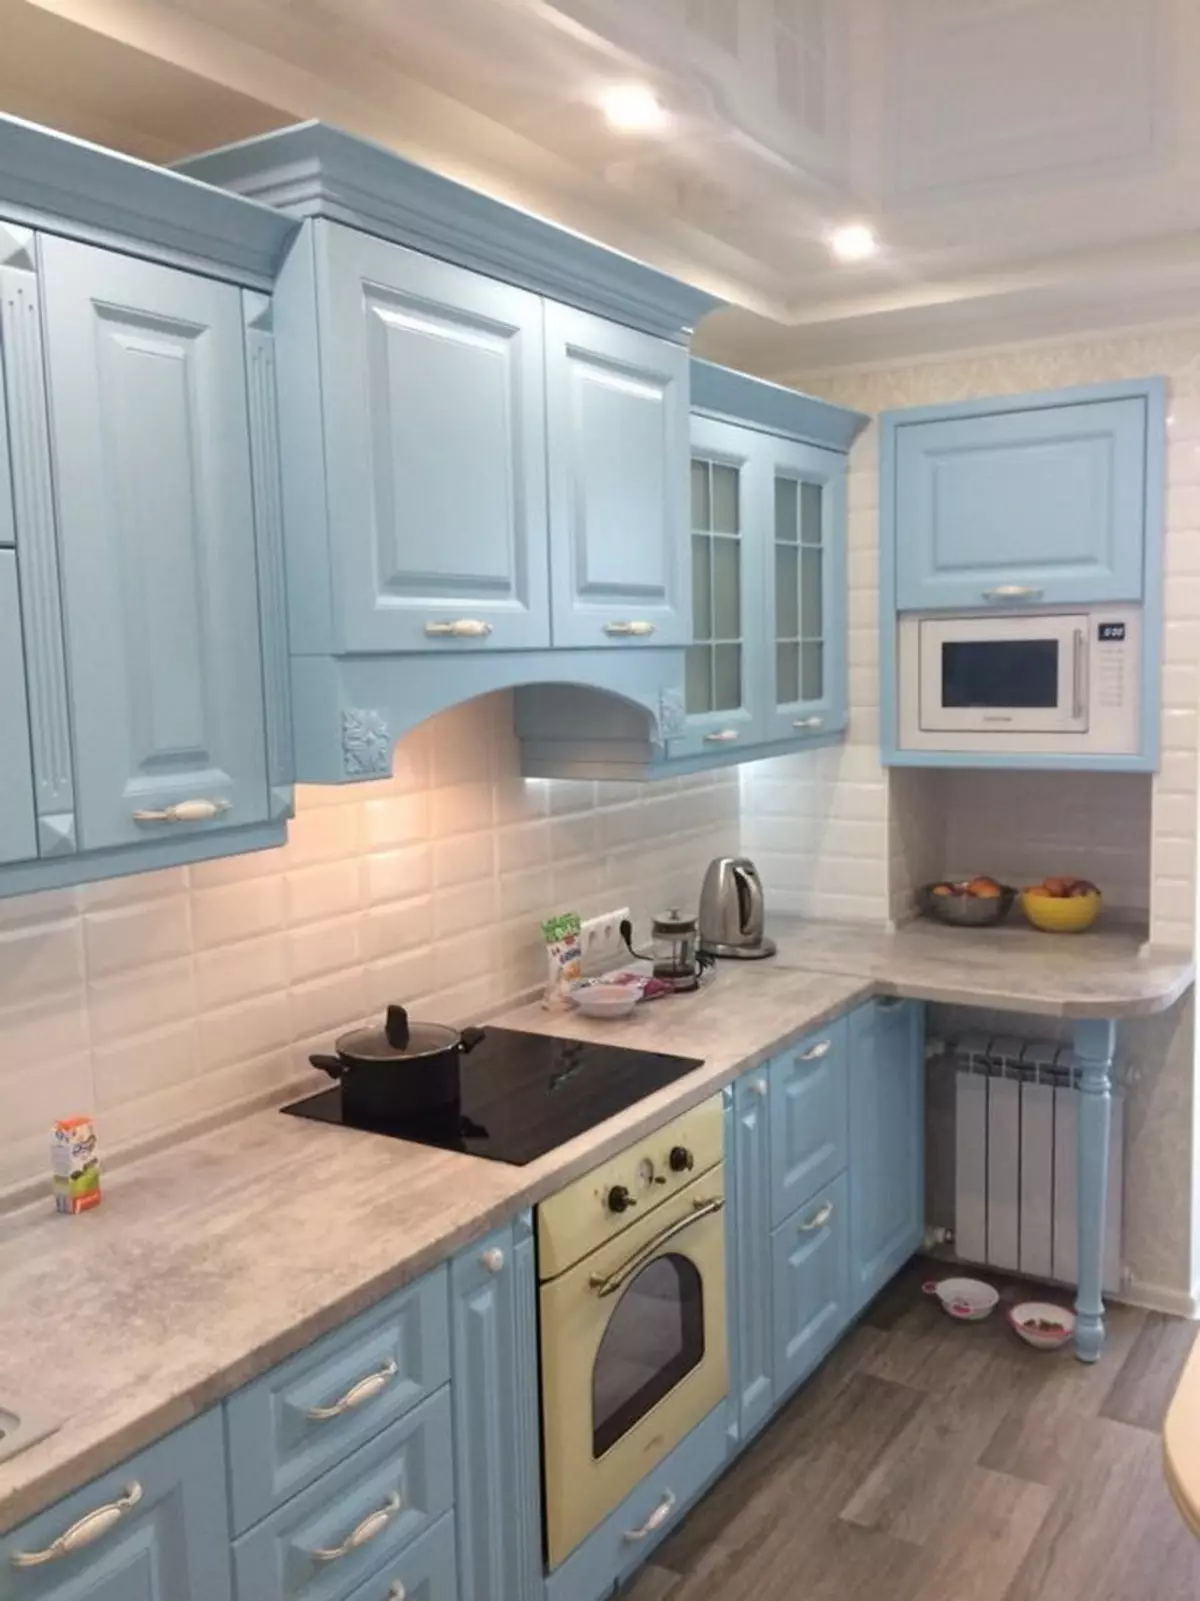 Bucătărie albastră (82 fotografii): Ce culori sunt combinate în interiorul unui set de bucătărie albastră? Design de bucătărie în tonuri albastre ușoare și întunecate 9555_66